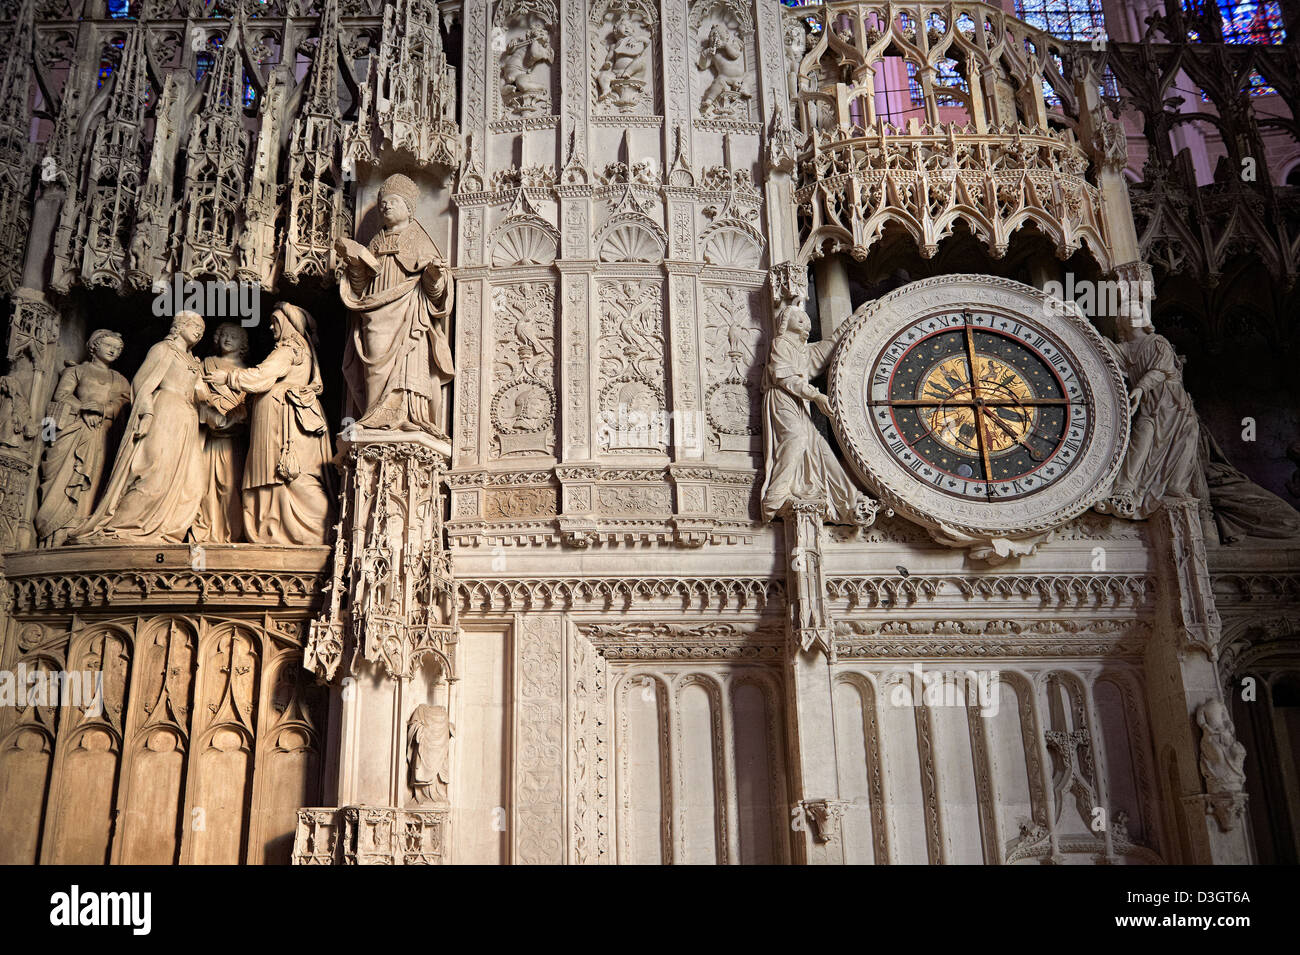 16e siècle de style gothique flamboyant Horloge Astrologique dans le choeur de l'écran la cathédrale de Chartres, France. Banque D'Images